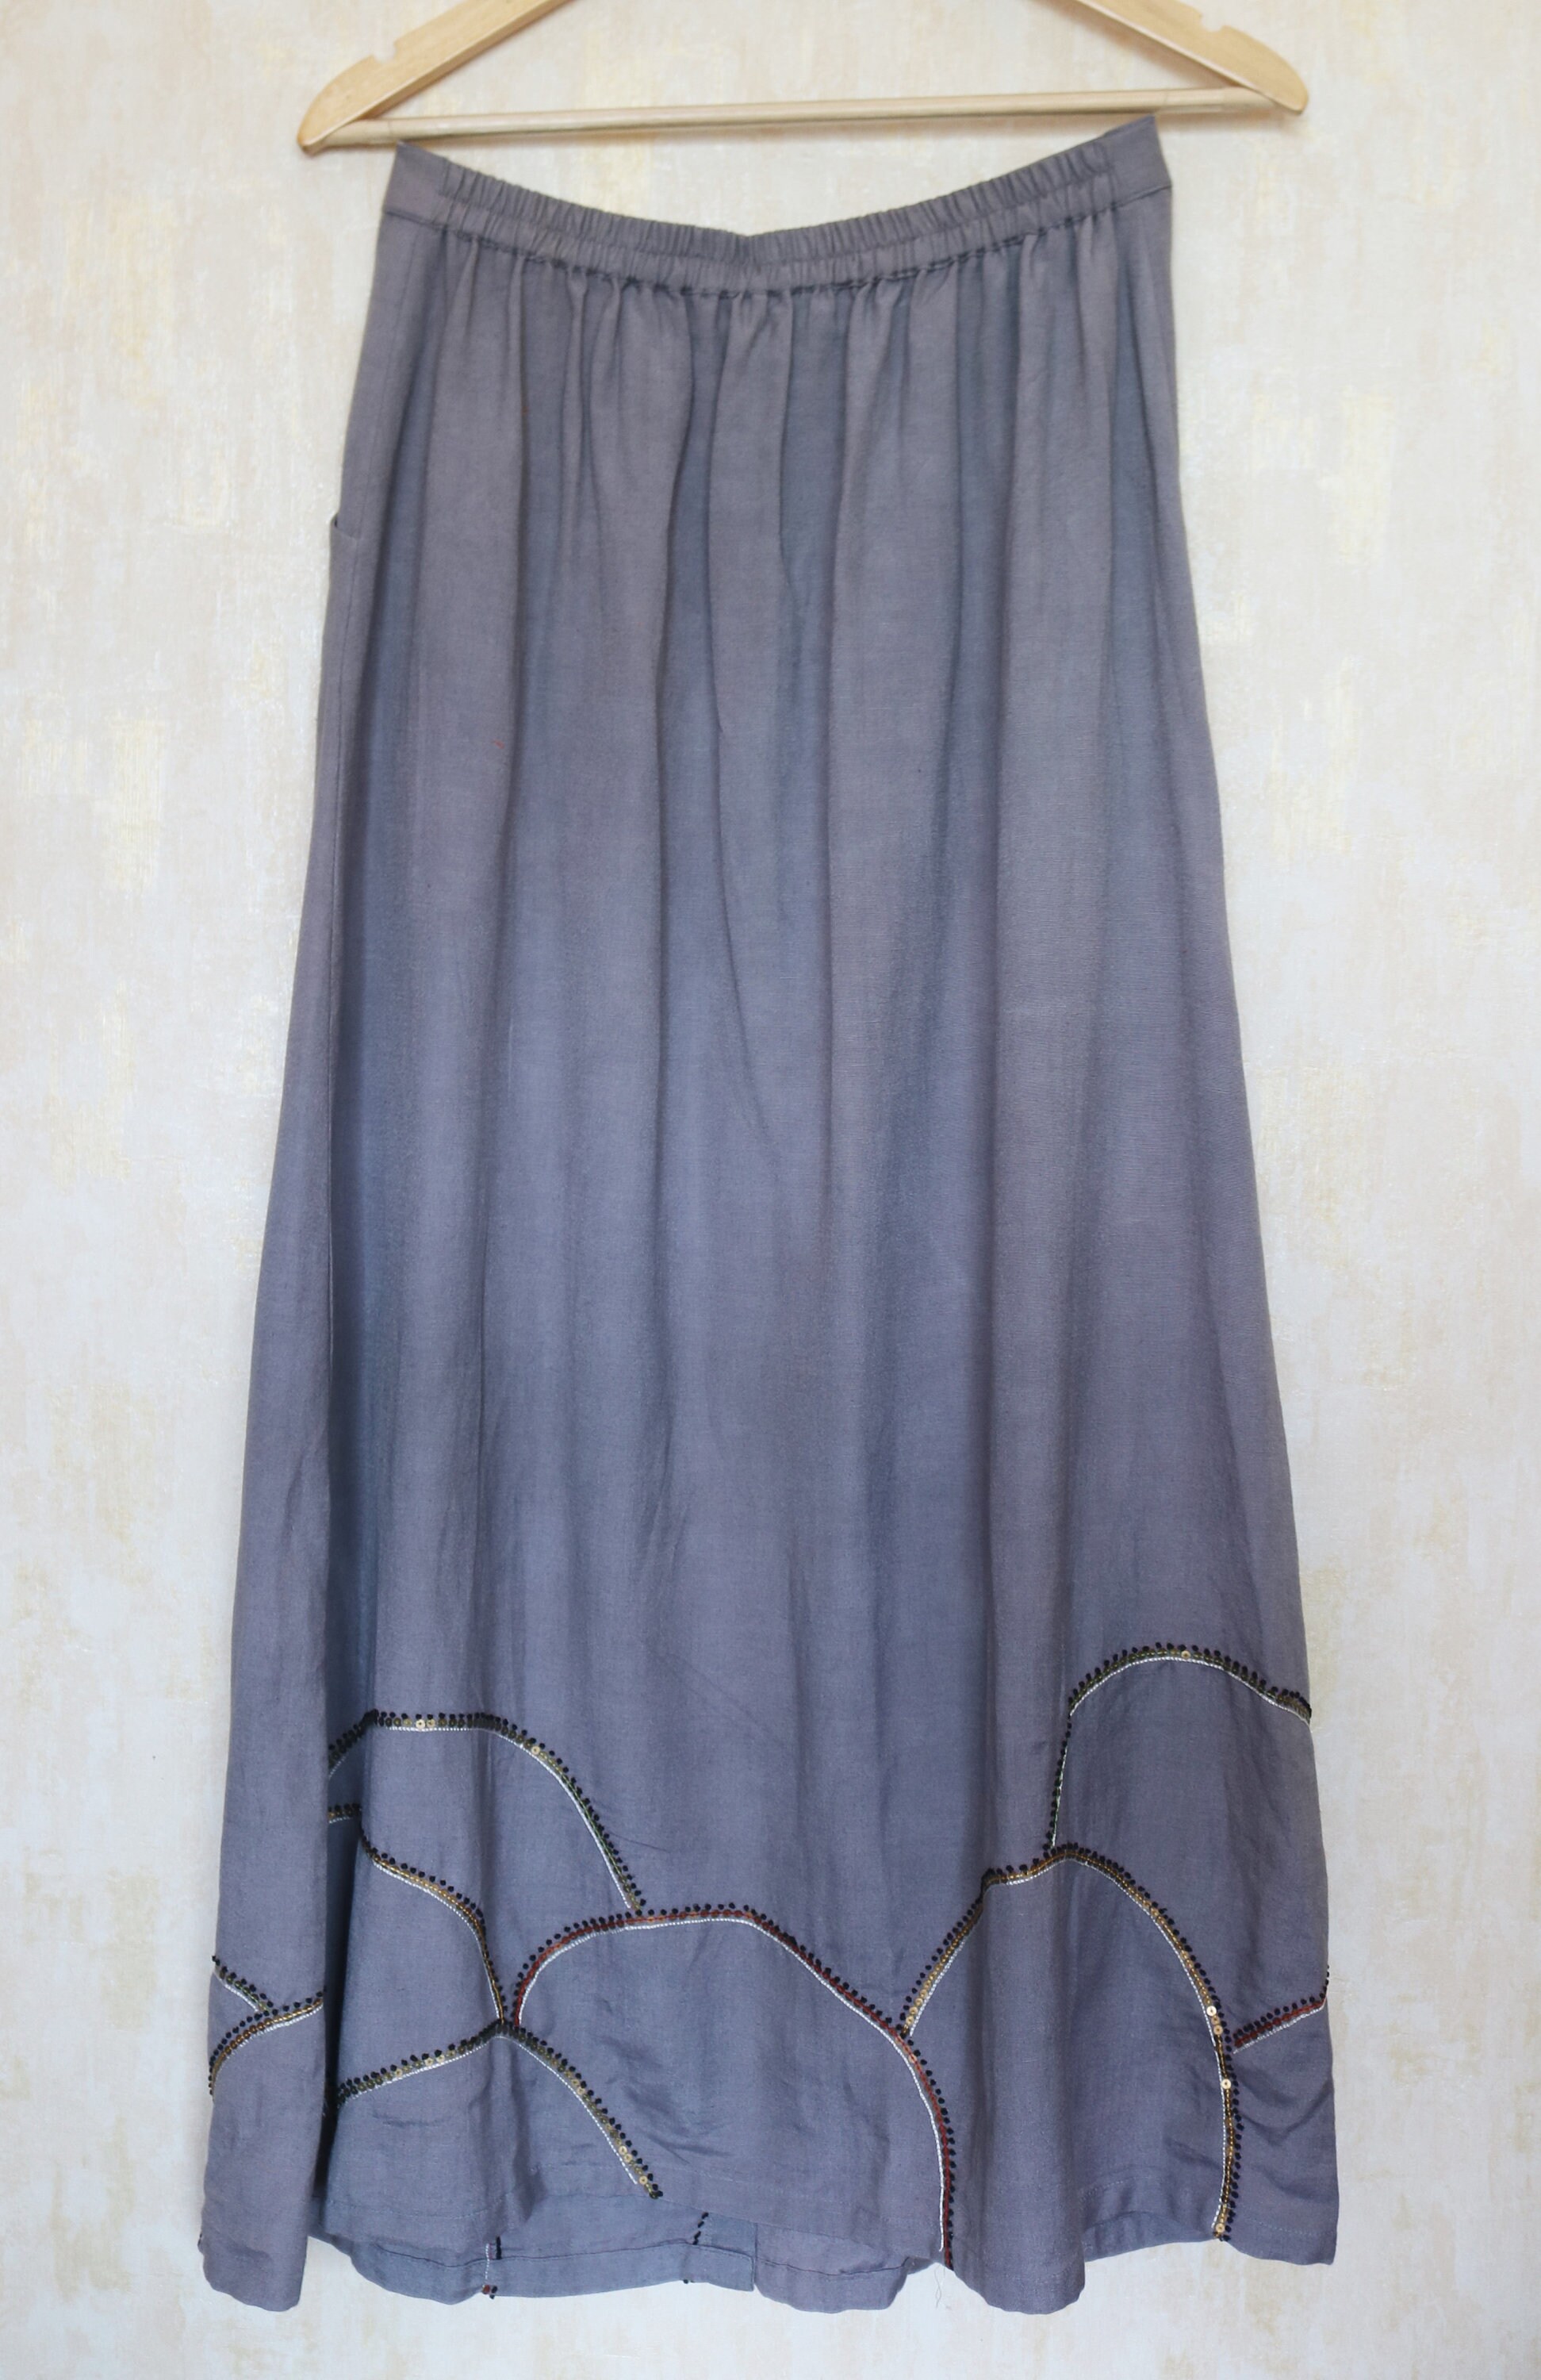 Maxi skirt for women Grey linen maxi skirt Linen skirt | Etsy